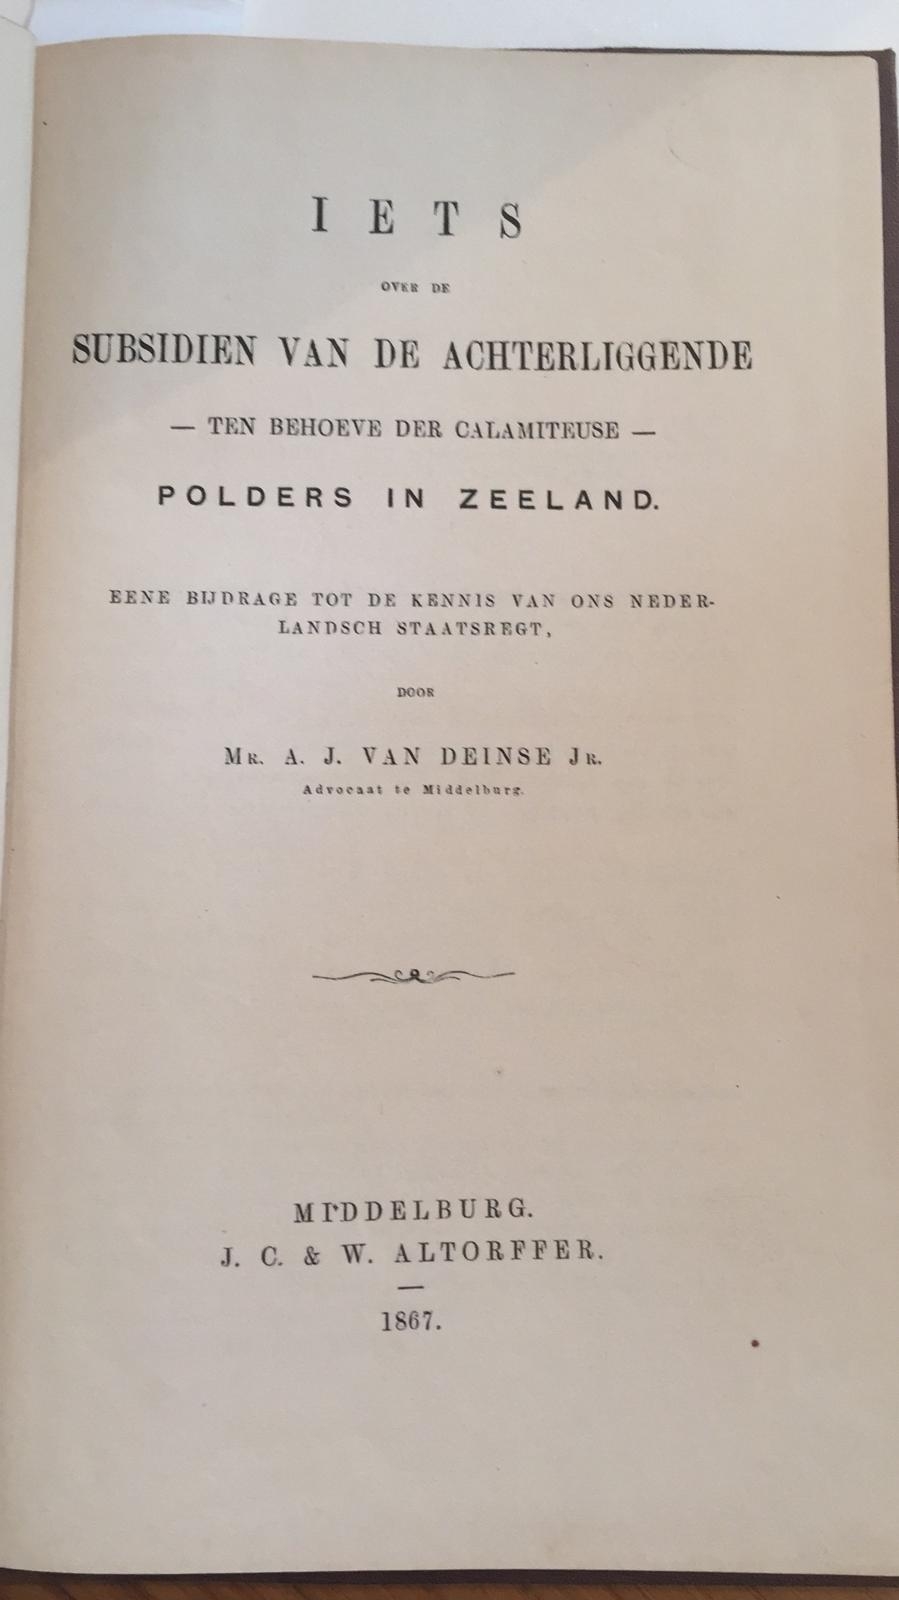 Deinse jr., A.J. van. - Iets over de subsidien van de achterliggende- ten behoeve der calamiteuse- polders in Zeeland; eene bijdrage tot de kennis van onsch Nederlandsch staatsregt, Middelburg J.C. & W. Altorffer 1867,68 pp.